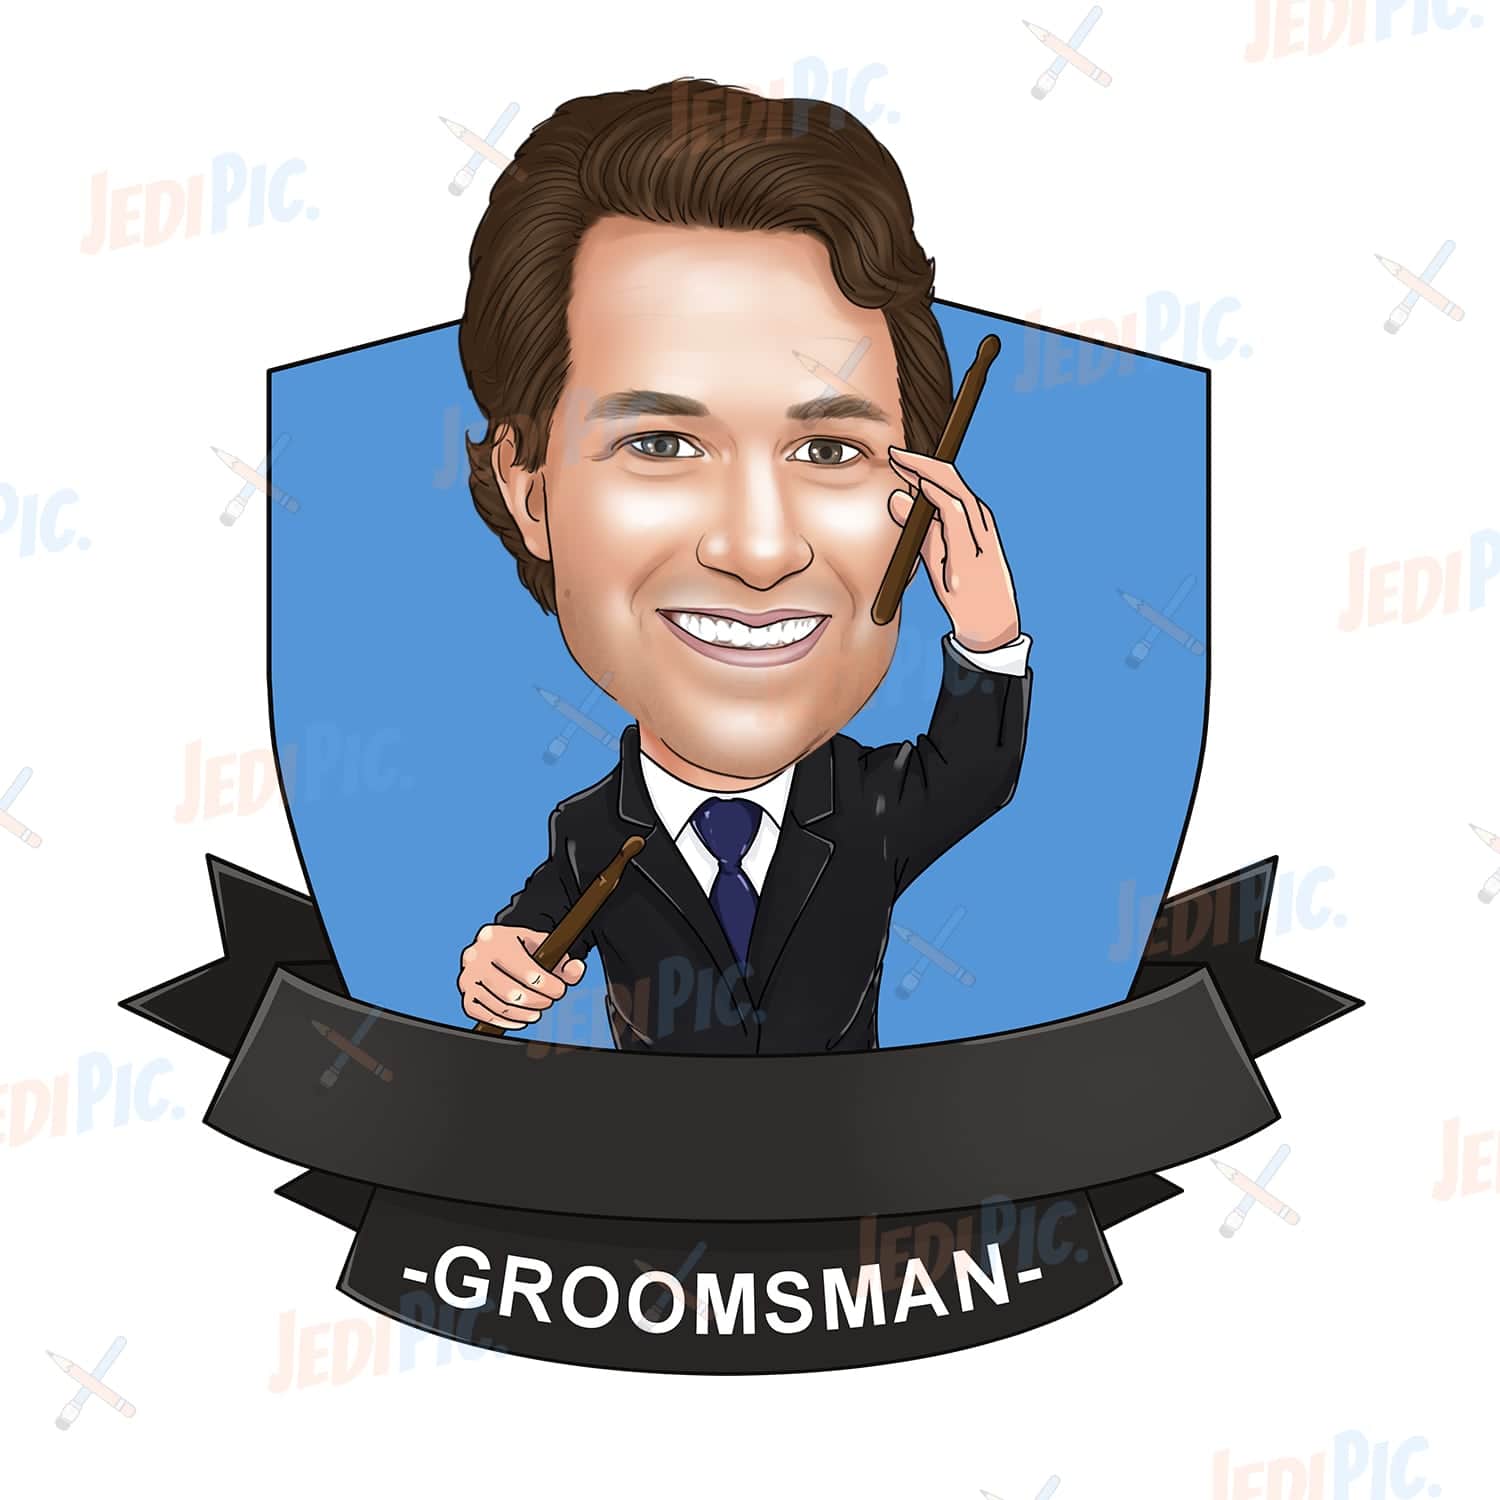 Groomsmen Cartoon Portrait in Suit